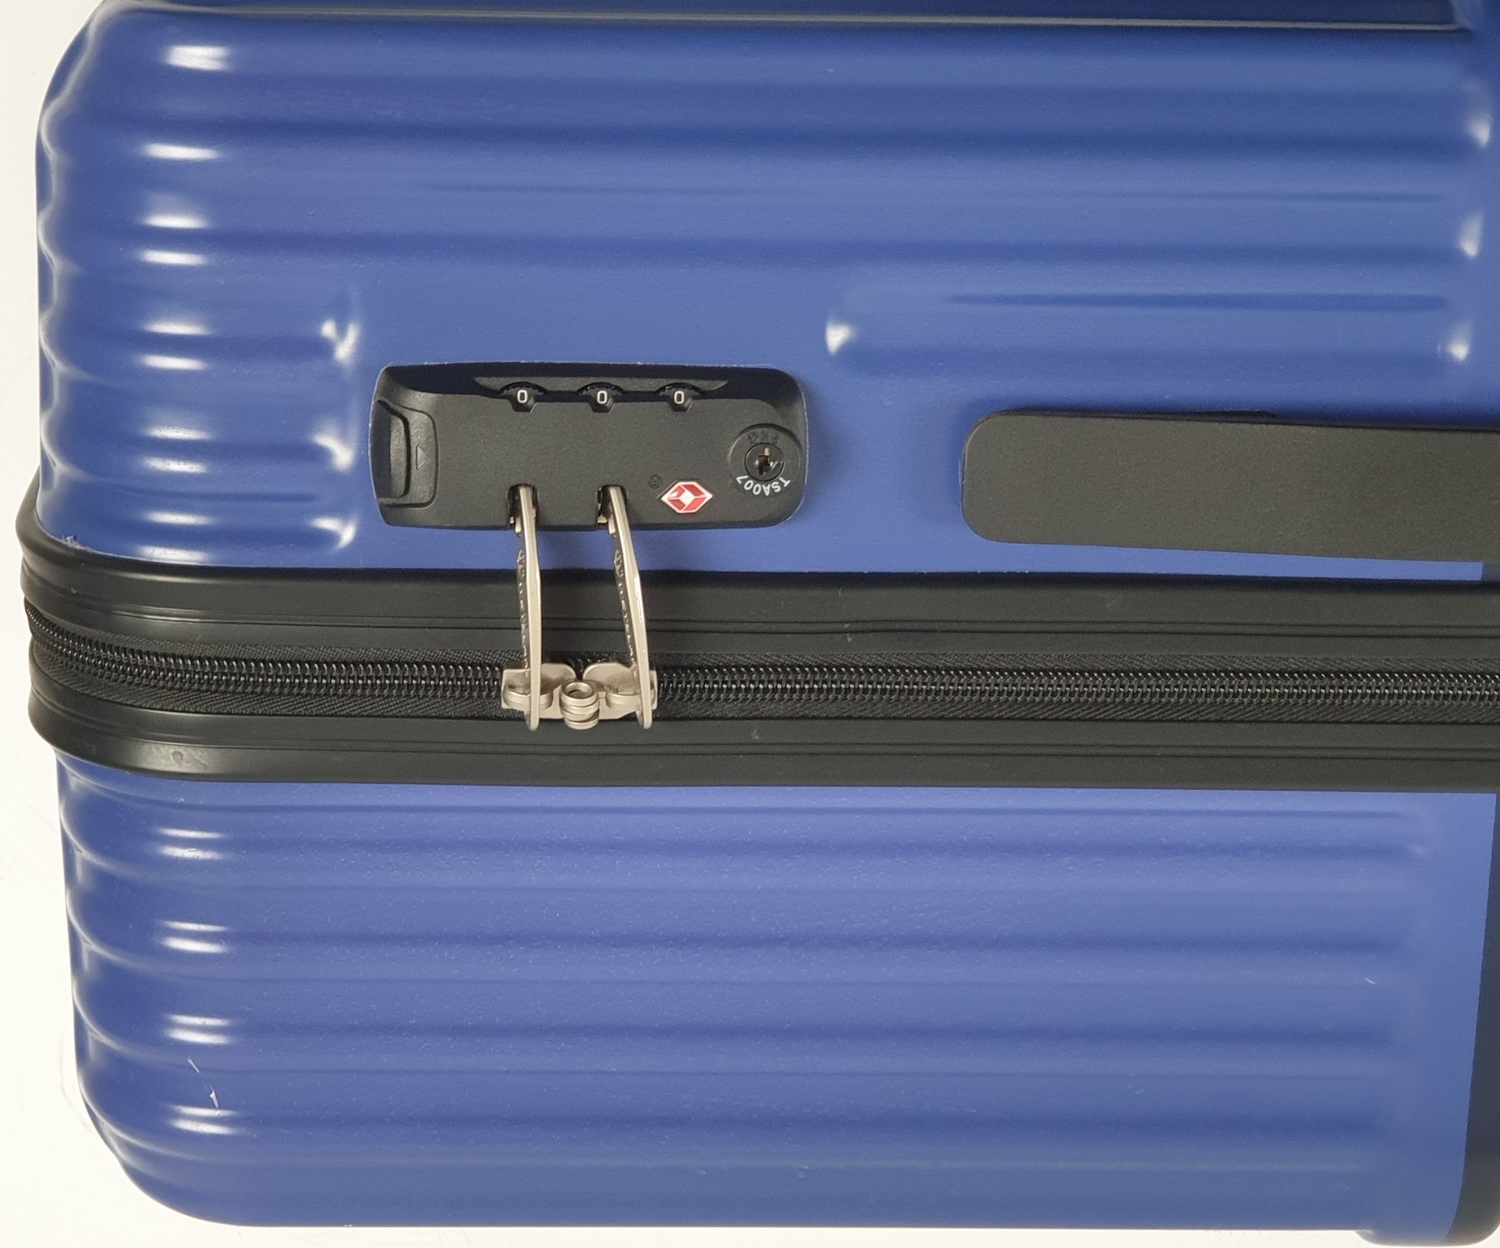 WETZLARS กระเป๋าเดินทาง PC ขนาด 28  รุ่น A-9623BL-3  สีน้ำเงิน